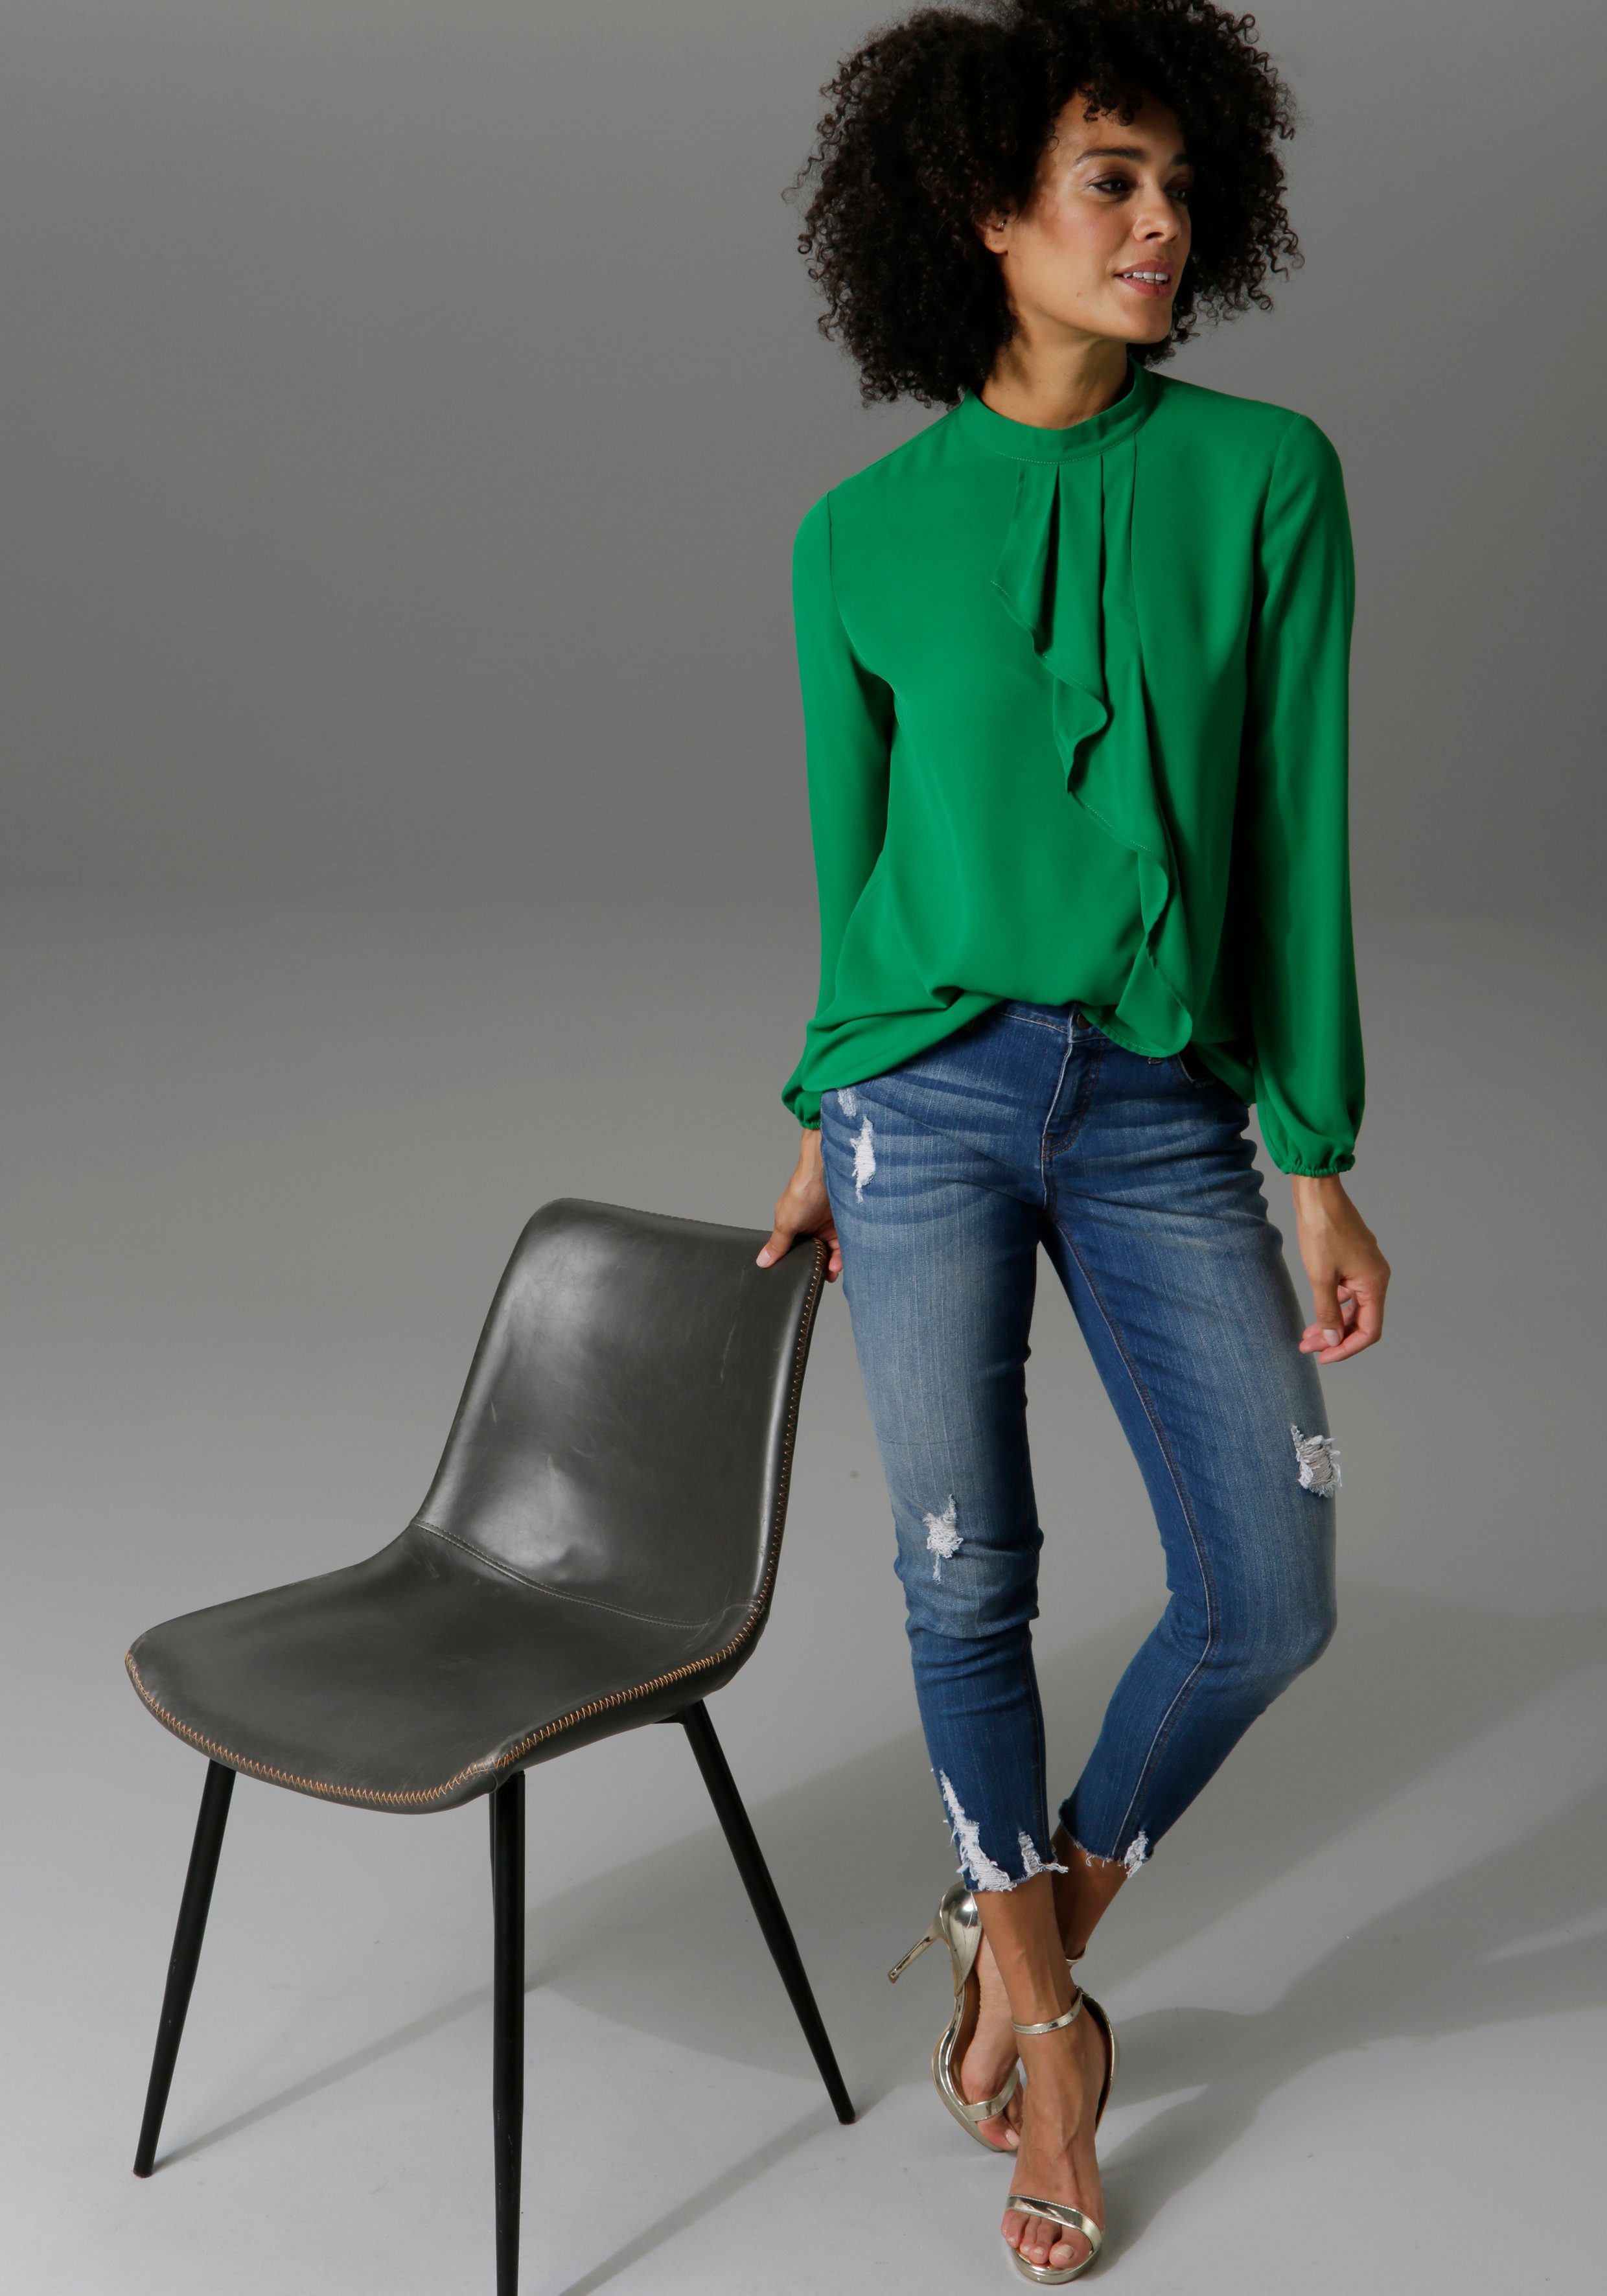 Grüne lange Blusen für Damen kaufen » Grüne Longblusen | OTTO